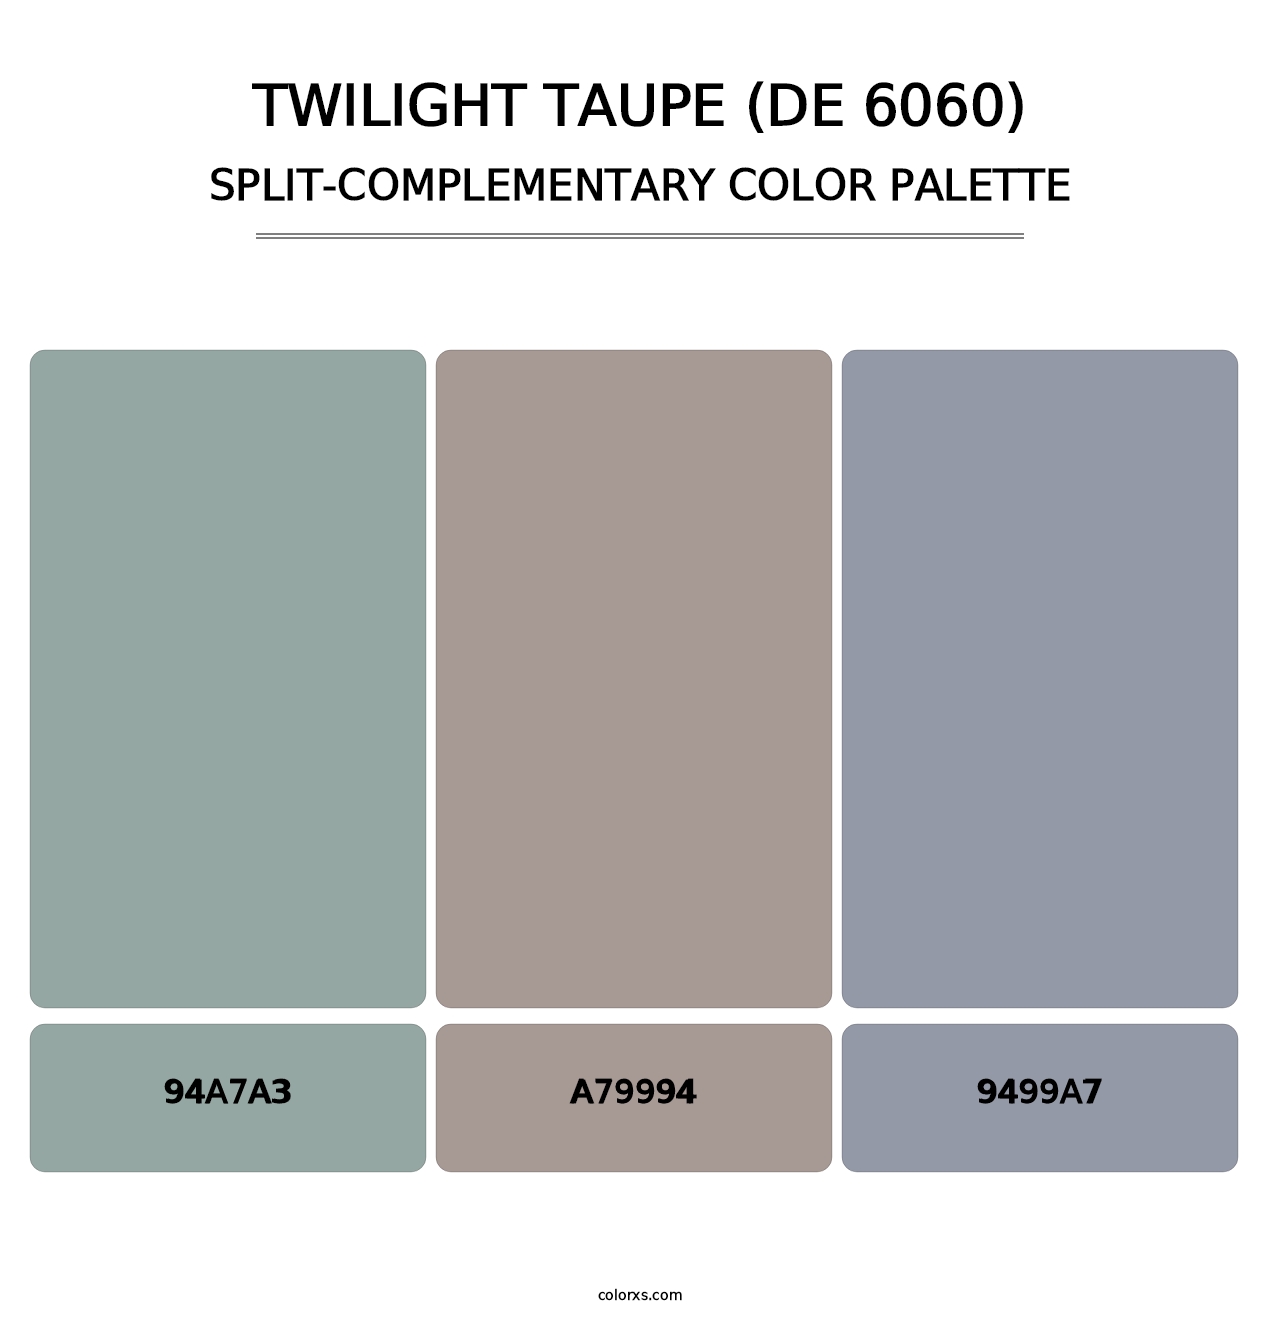 Twilight Taupe (DE 6060) - Split-Complementary Color Palette